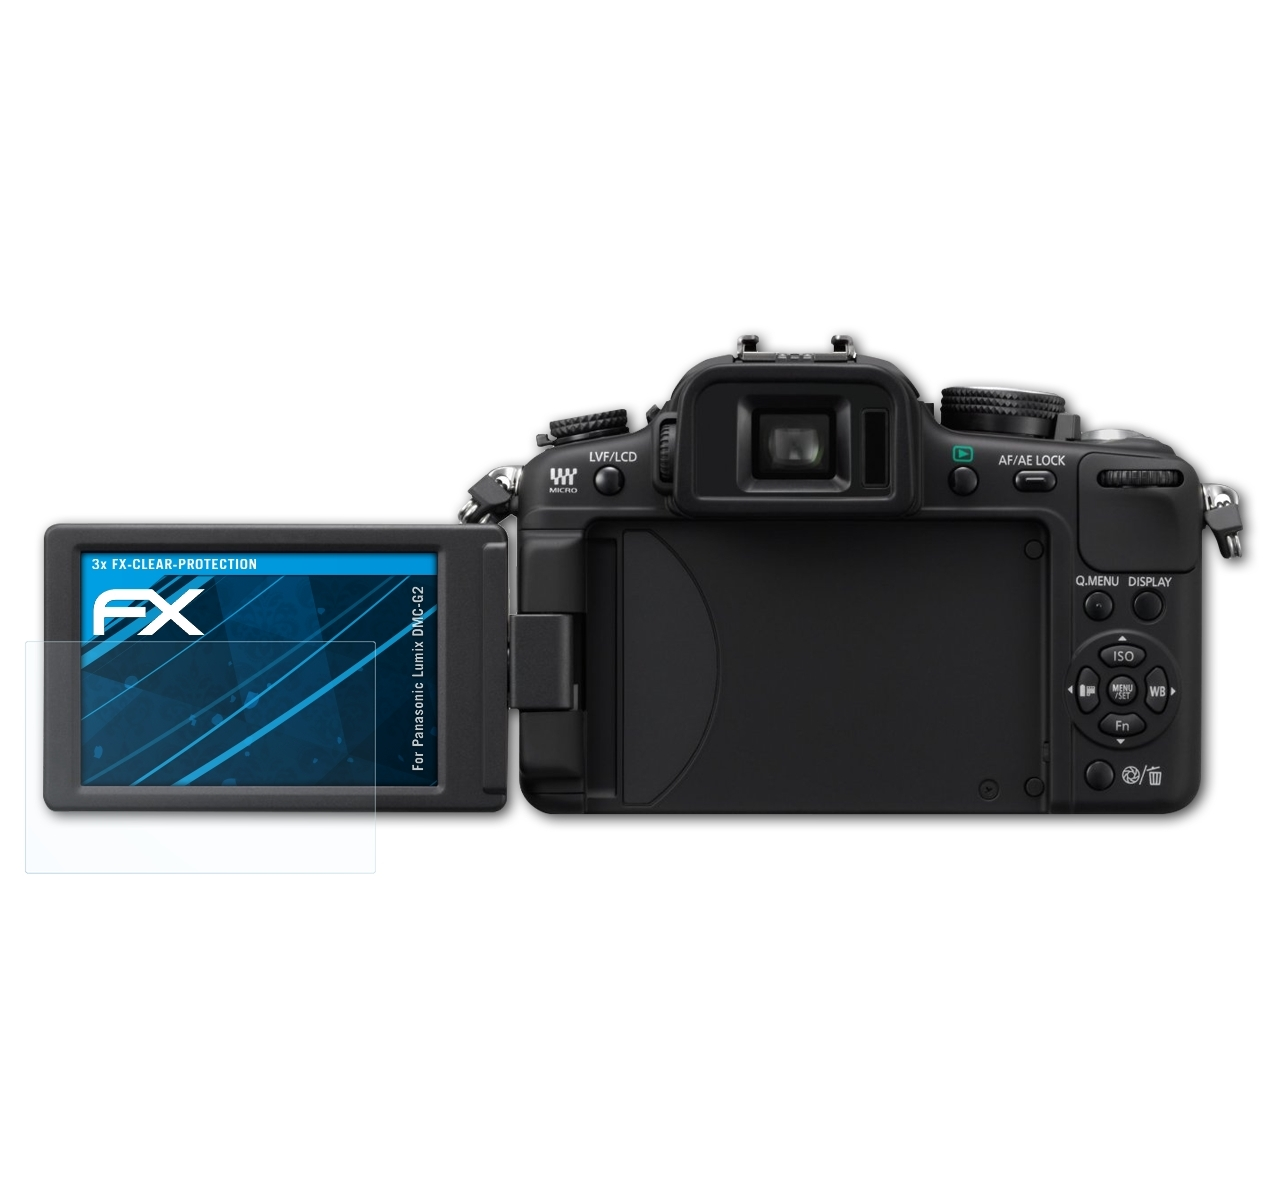 Panasonic FX-Clear 3x Displayschutz(für DMC-G2) ATFOLIX Lumix